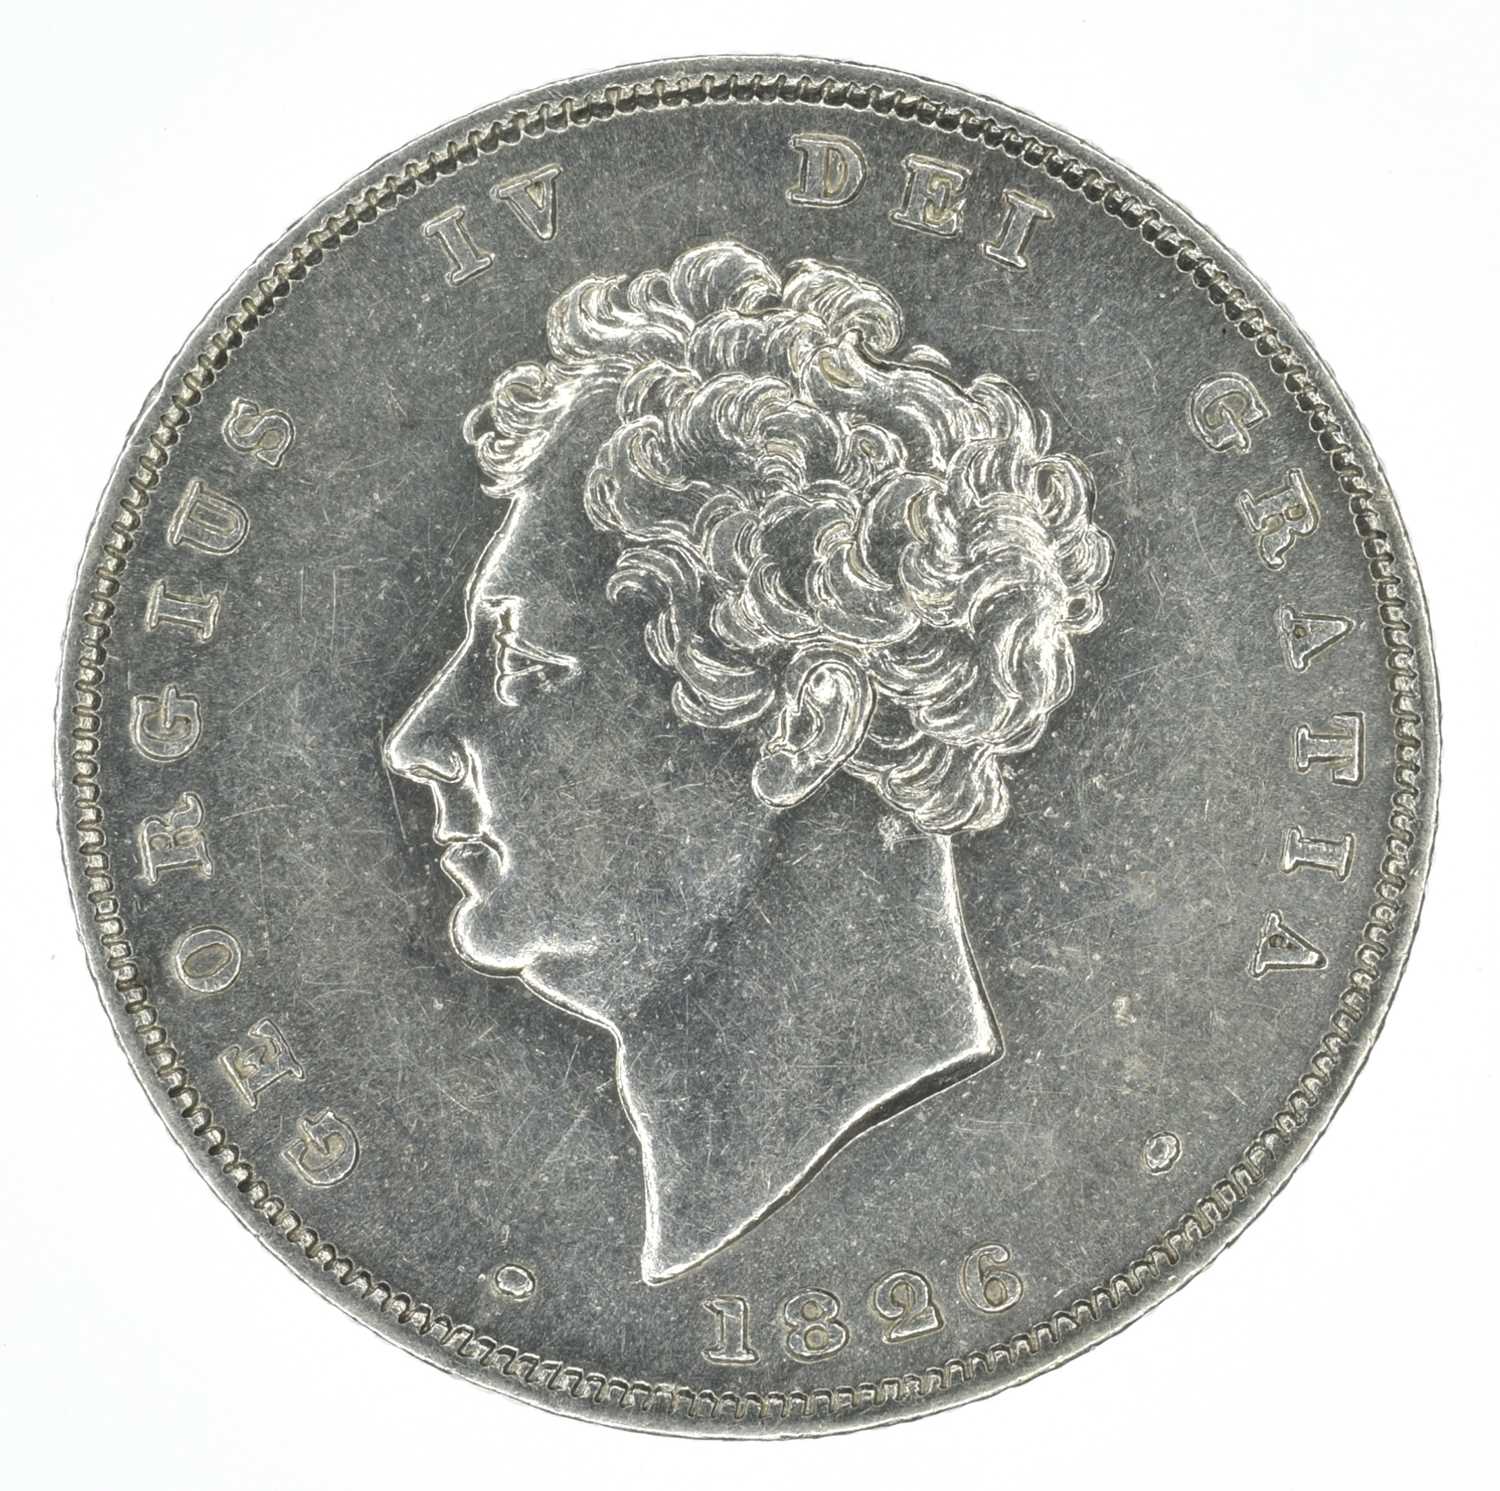 King George IV, Shilling, 1826, EF.